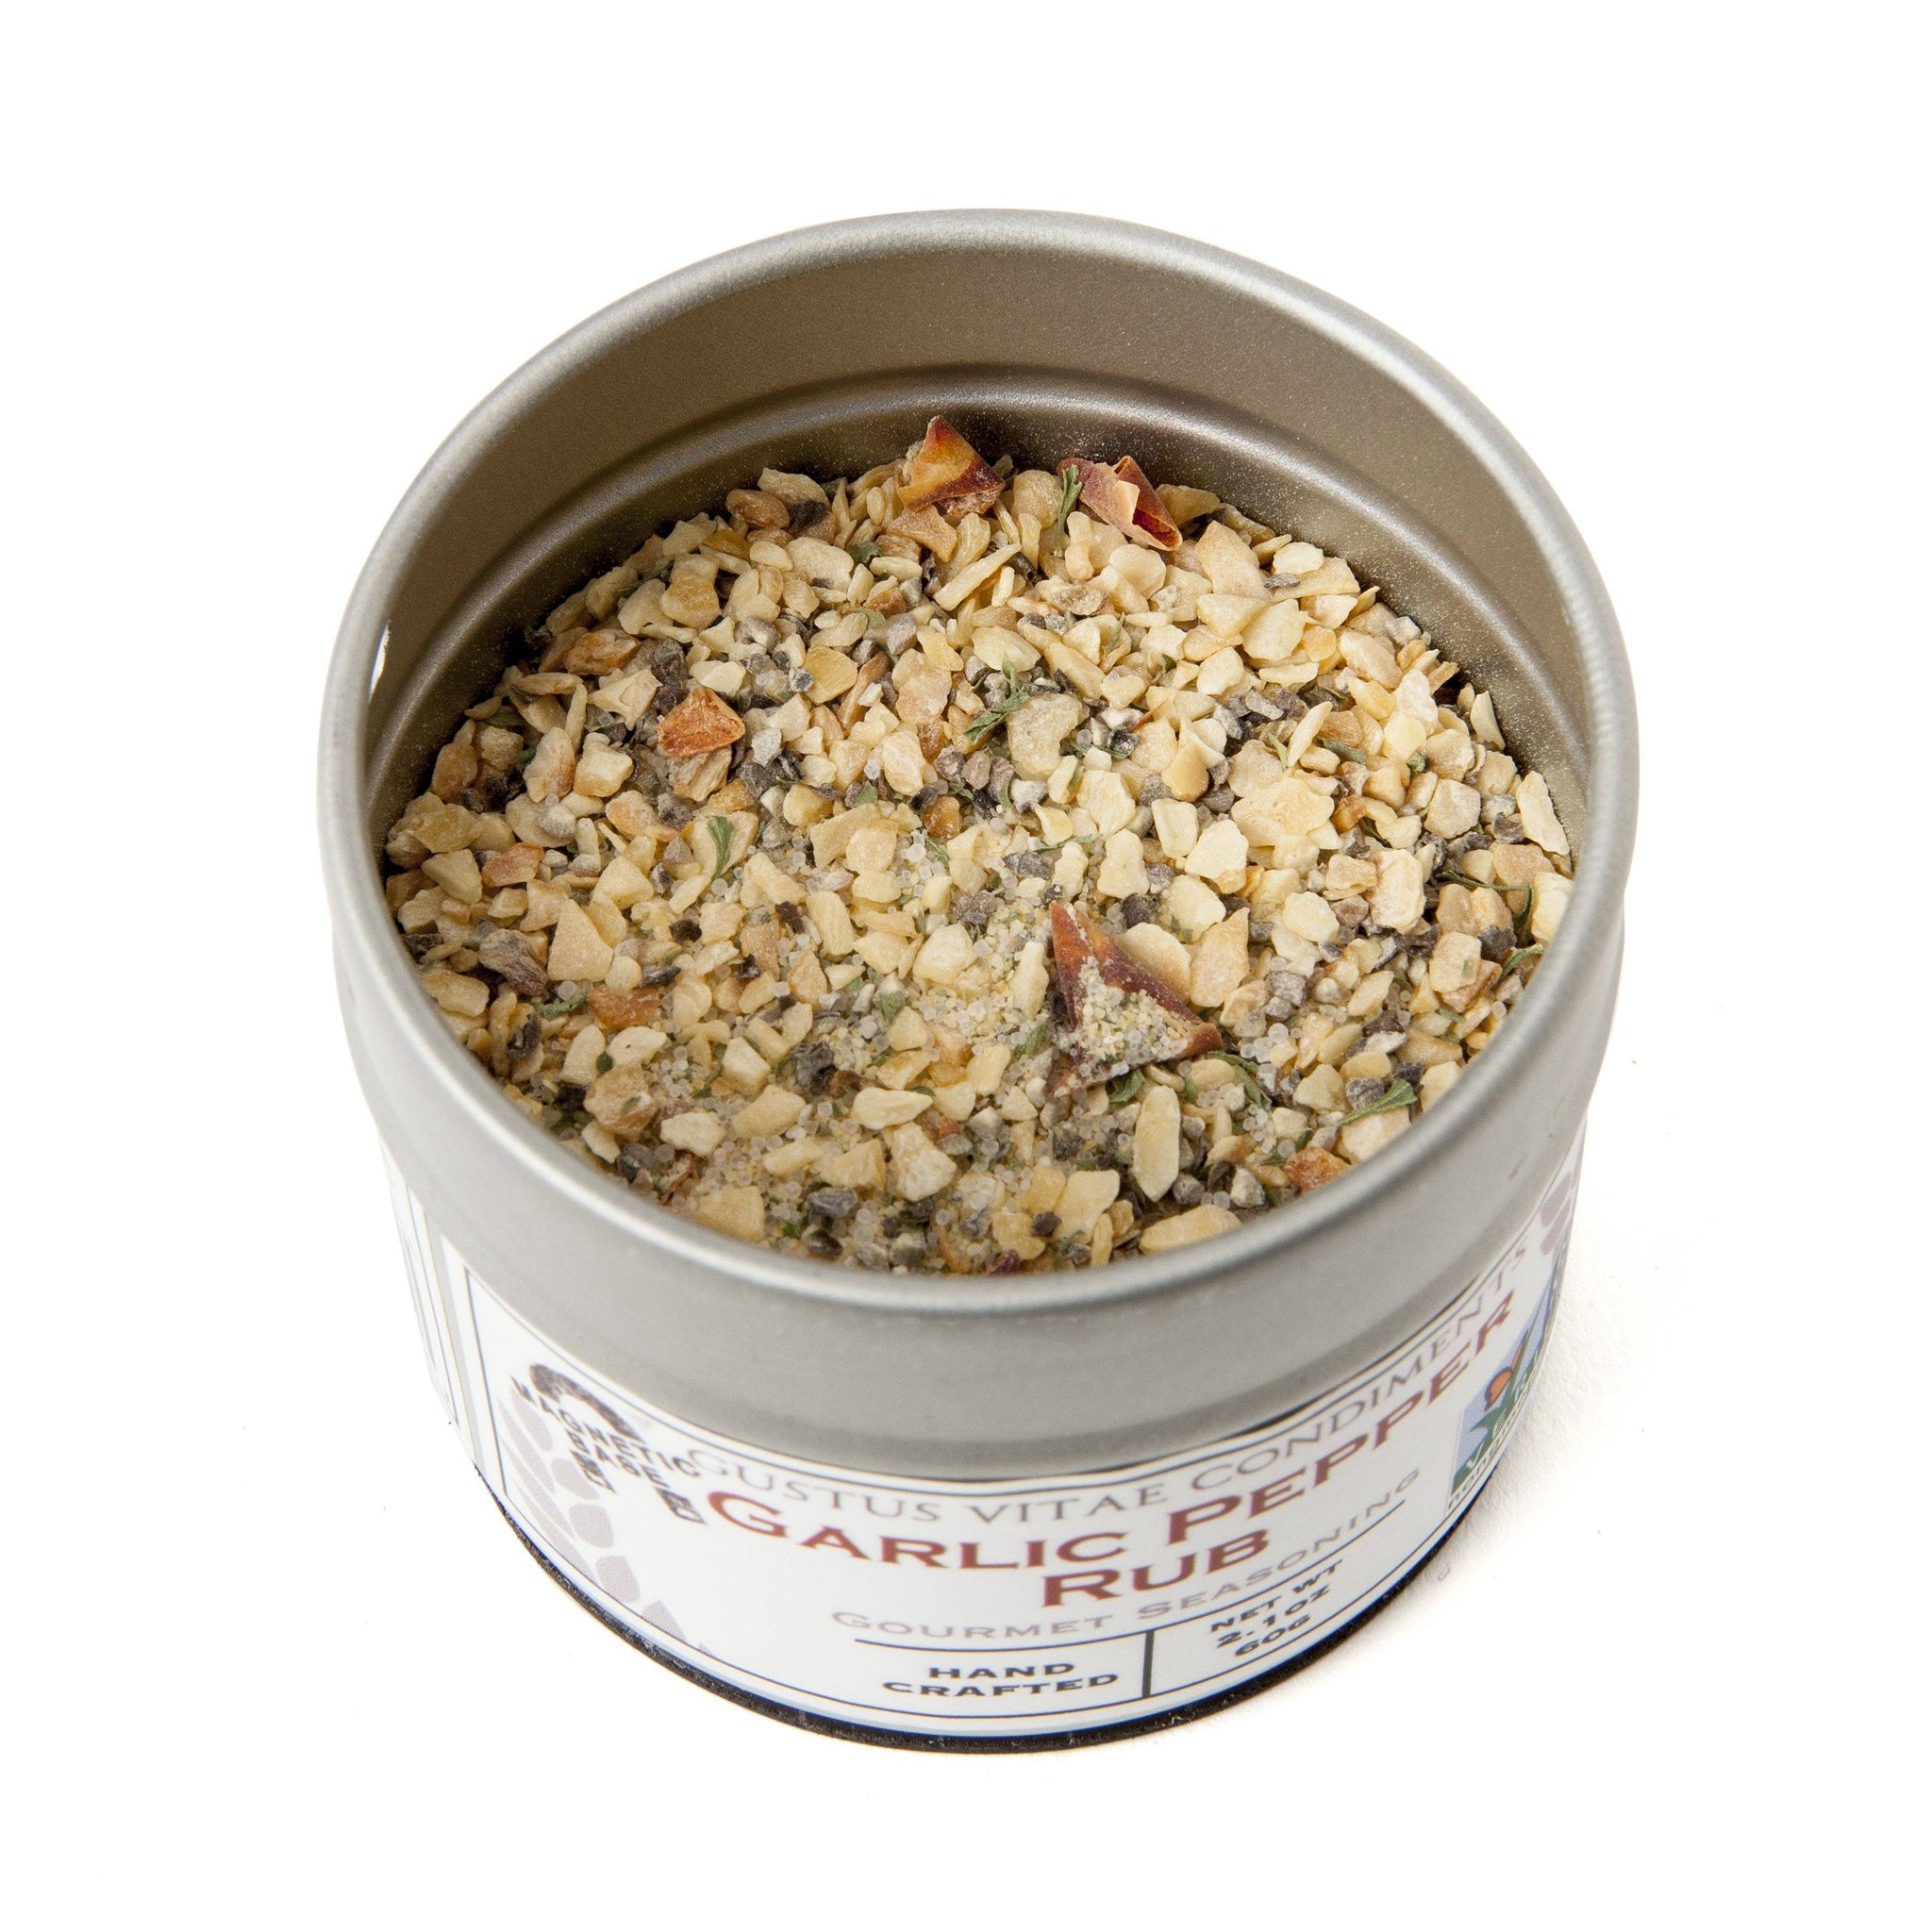 Gustus Vitae : Pantry Starter Kit  8 Essential Spices, Seasonings, & Salts  - Miz En Place